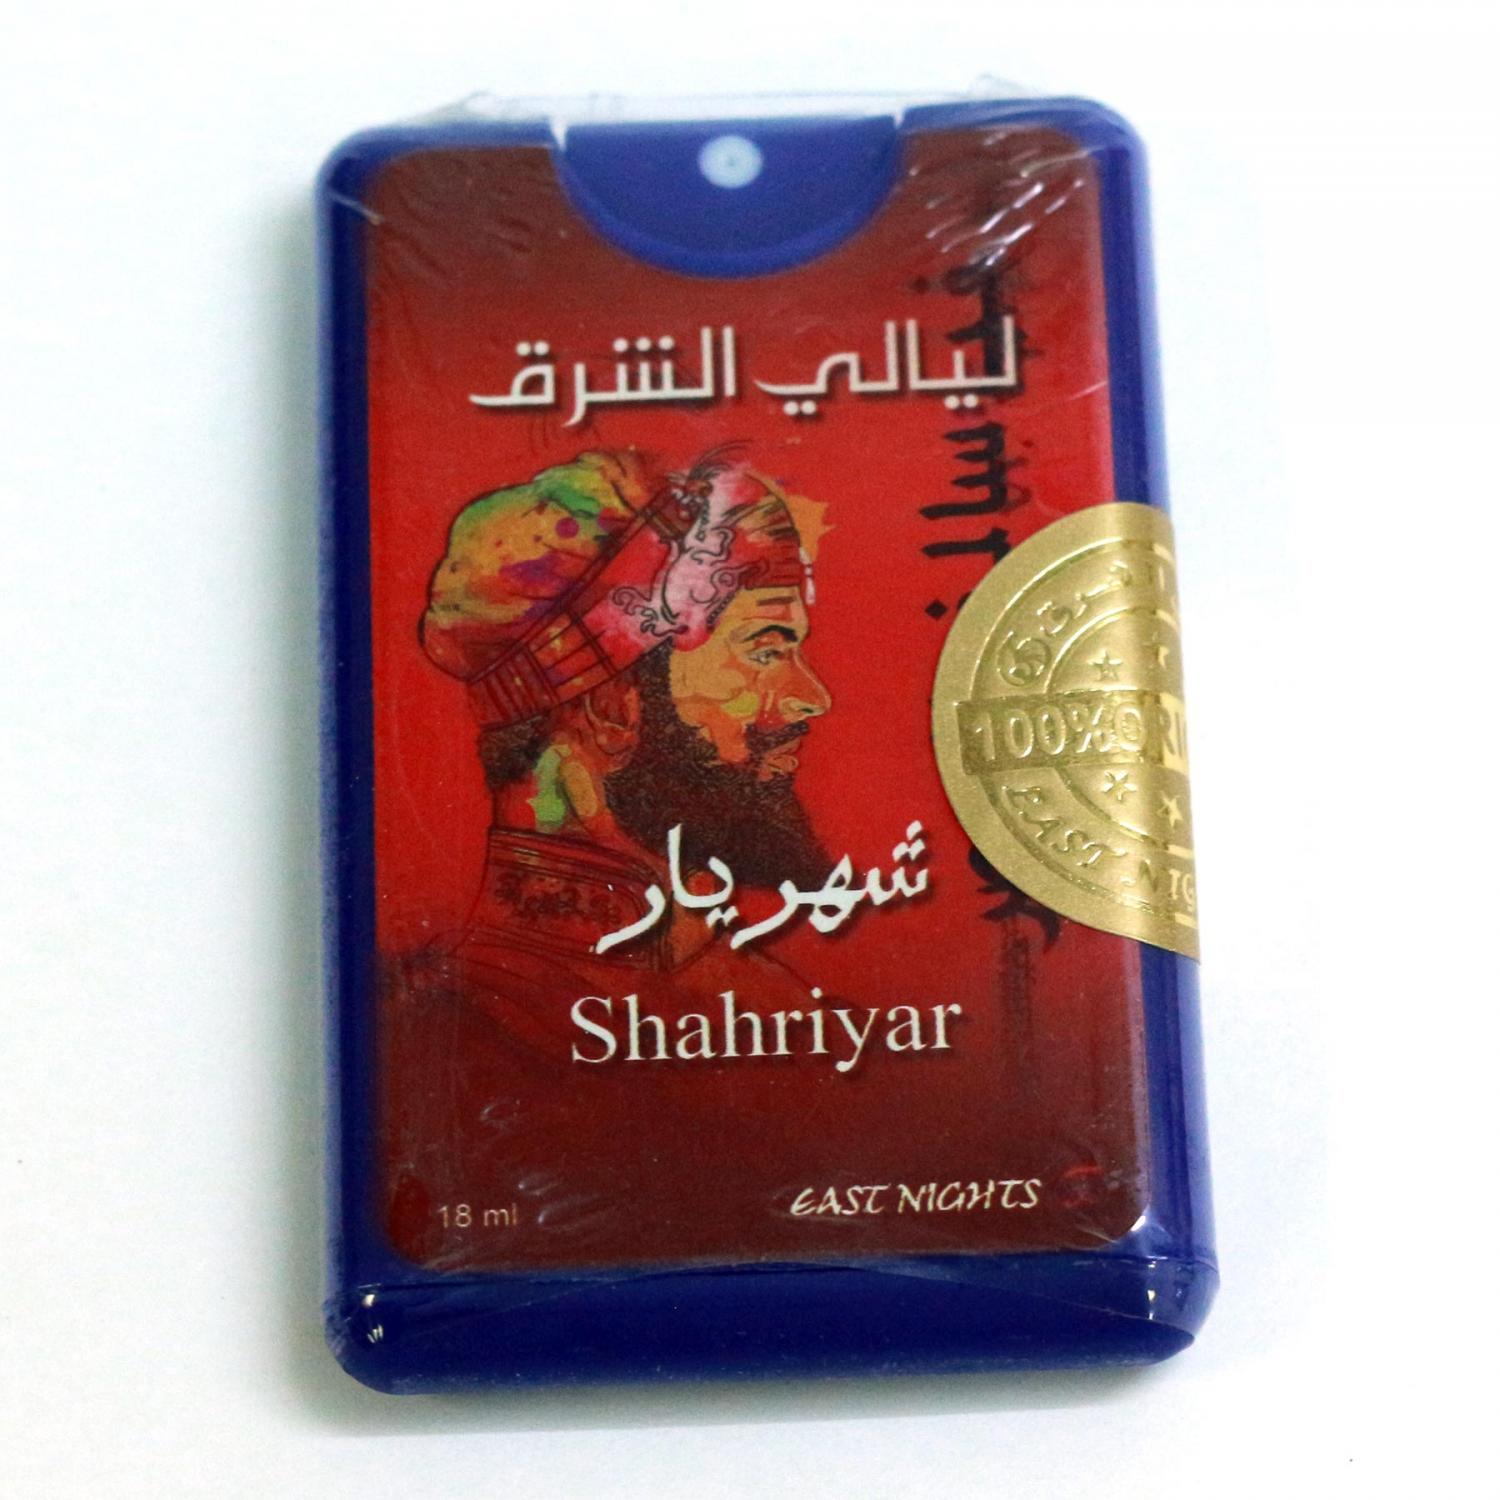 Масляные духи в упаковке спрей-покет Shahriyar